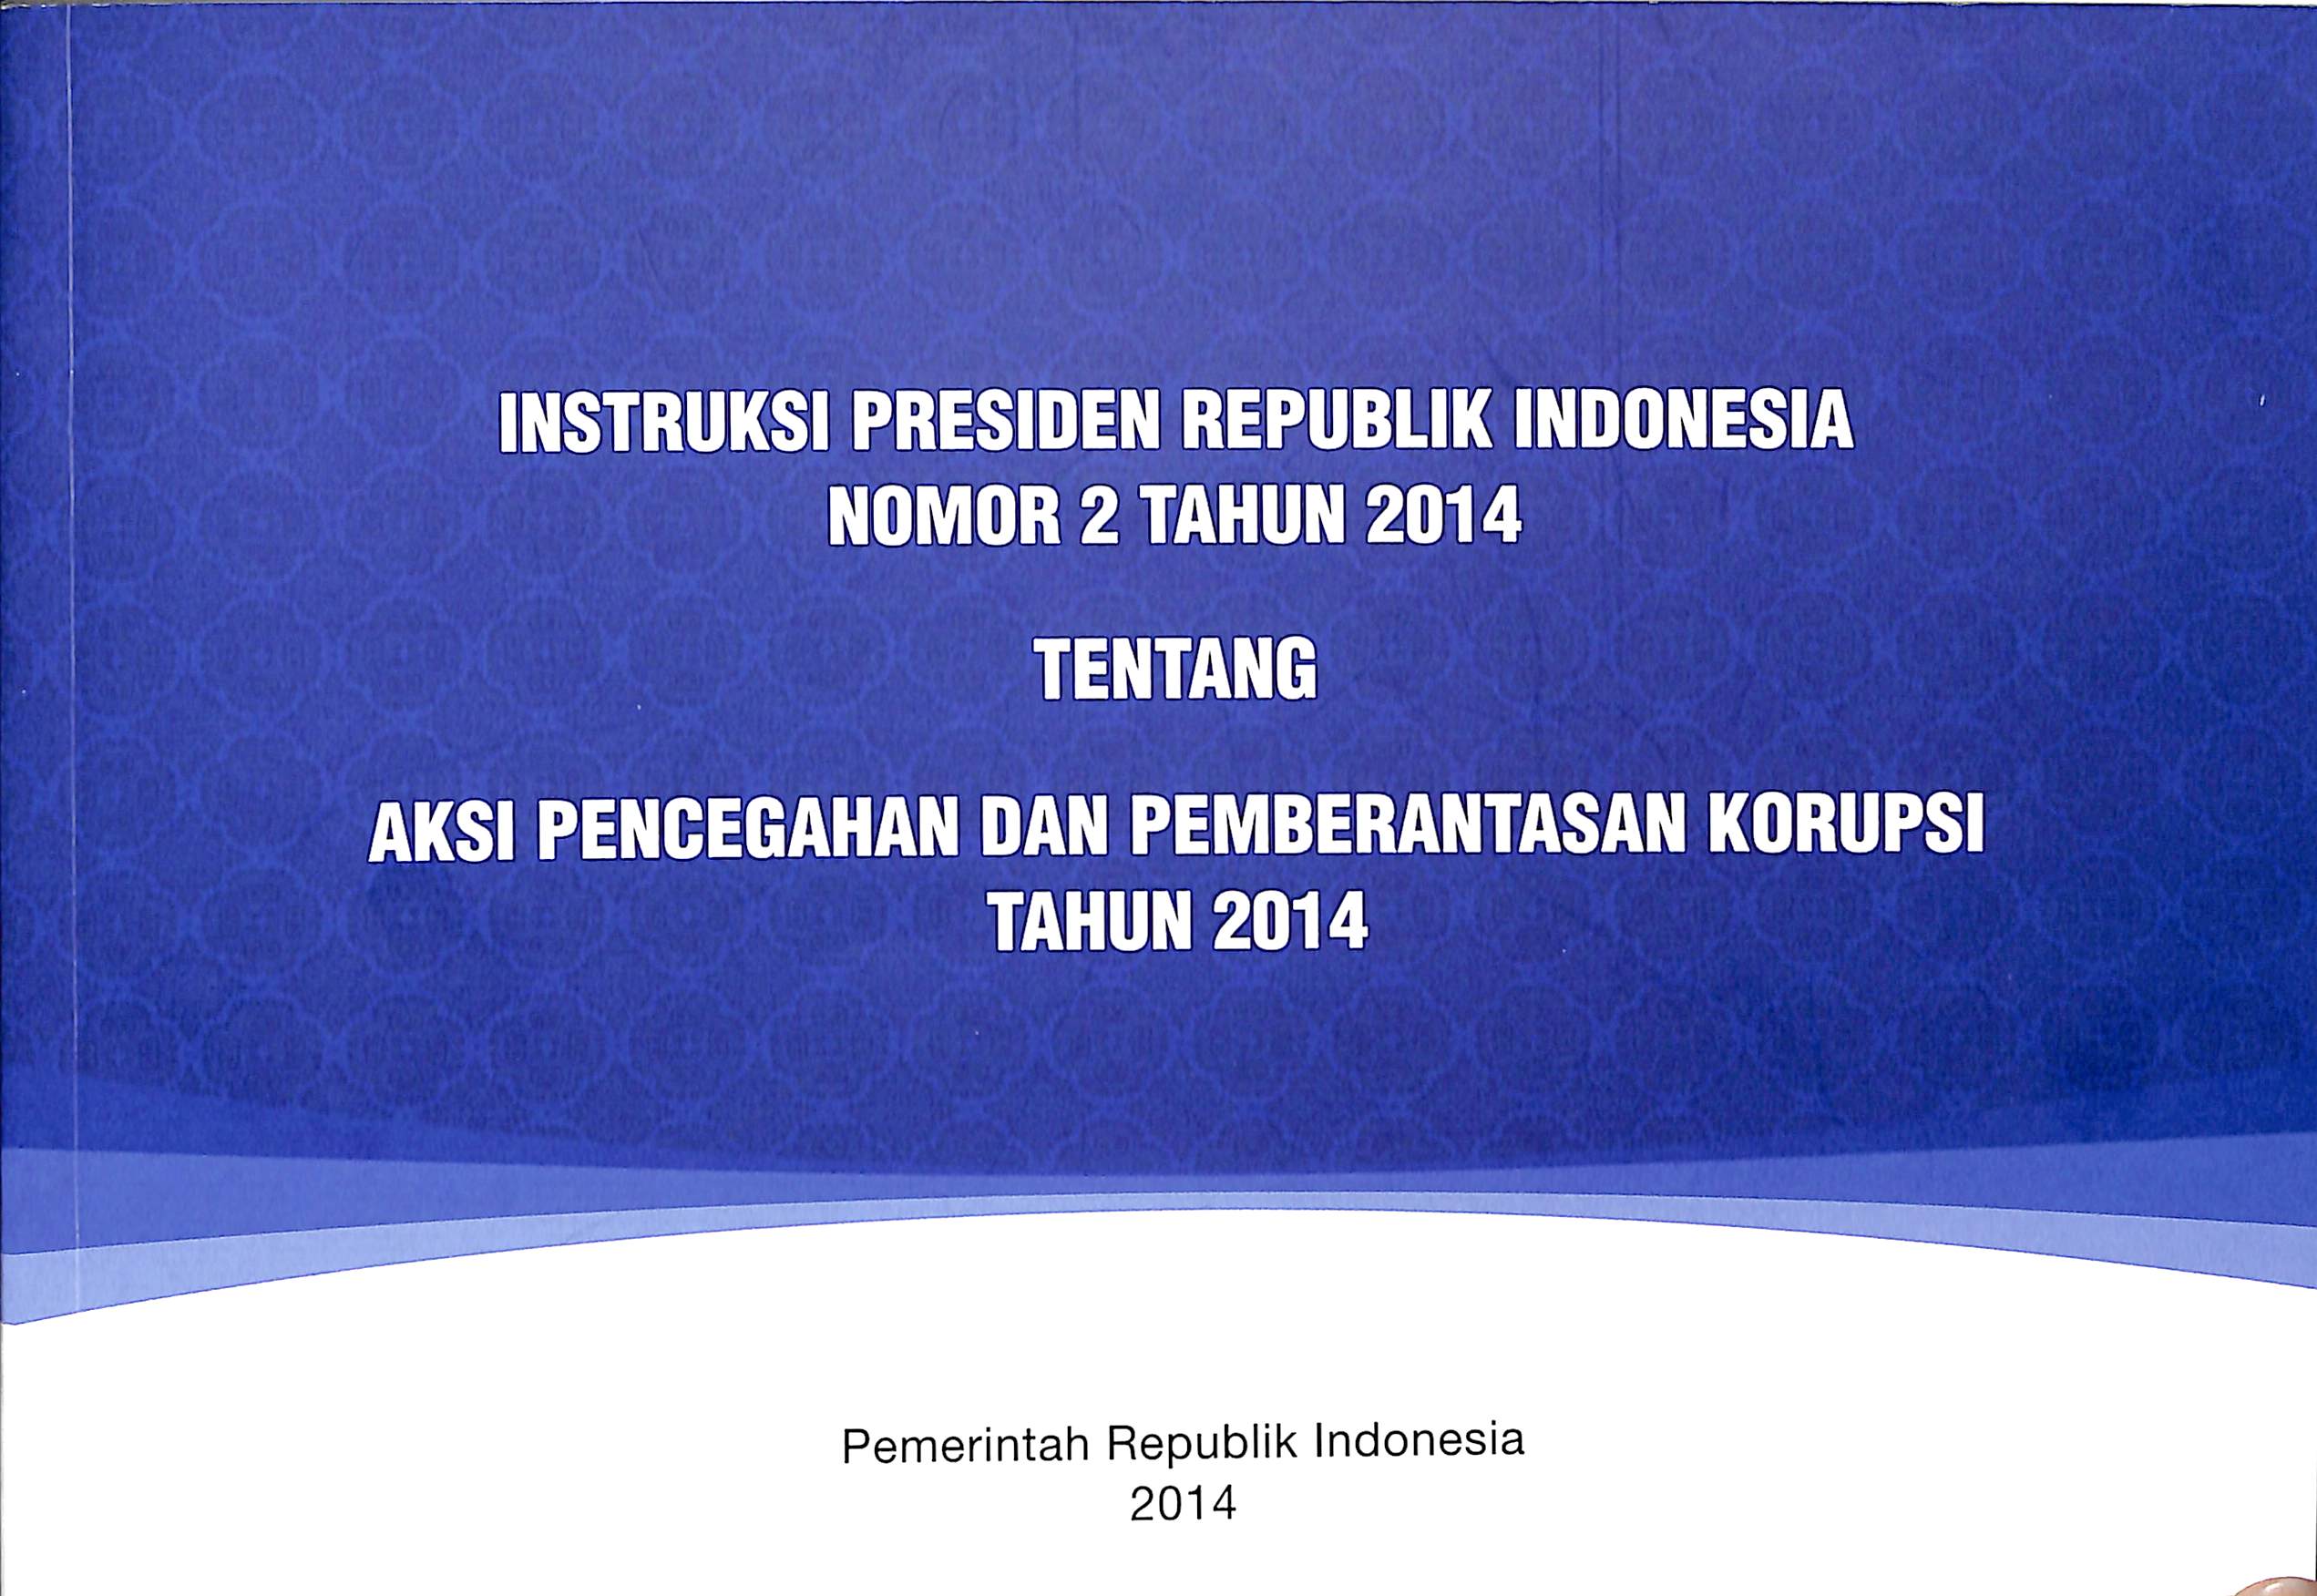 Instruksi Presiden Republik Indonesia nomor 2 tahun 2014 :  tentang aksi pencegahan dan pembatasan korupsi tahun 2014